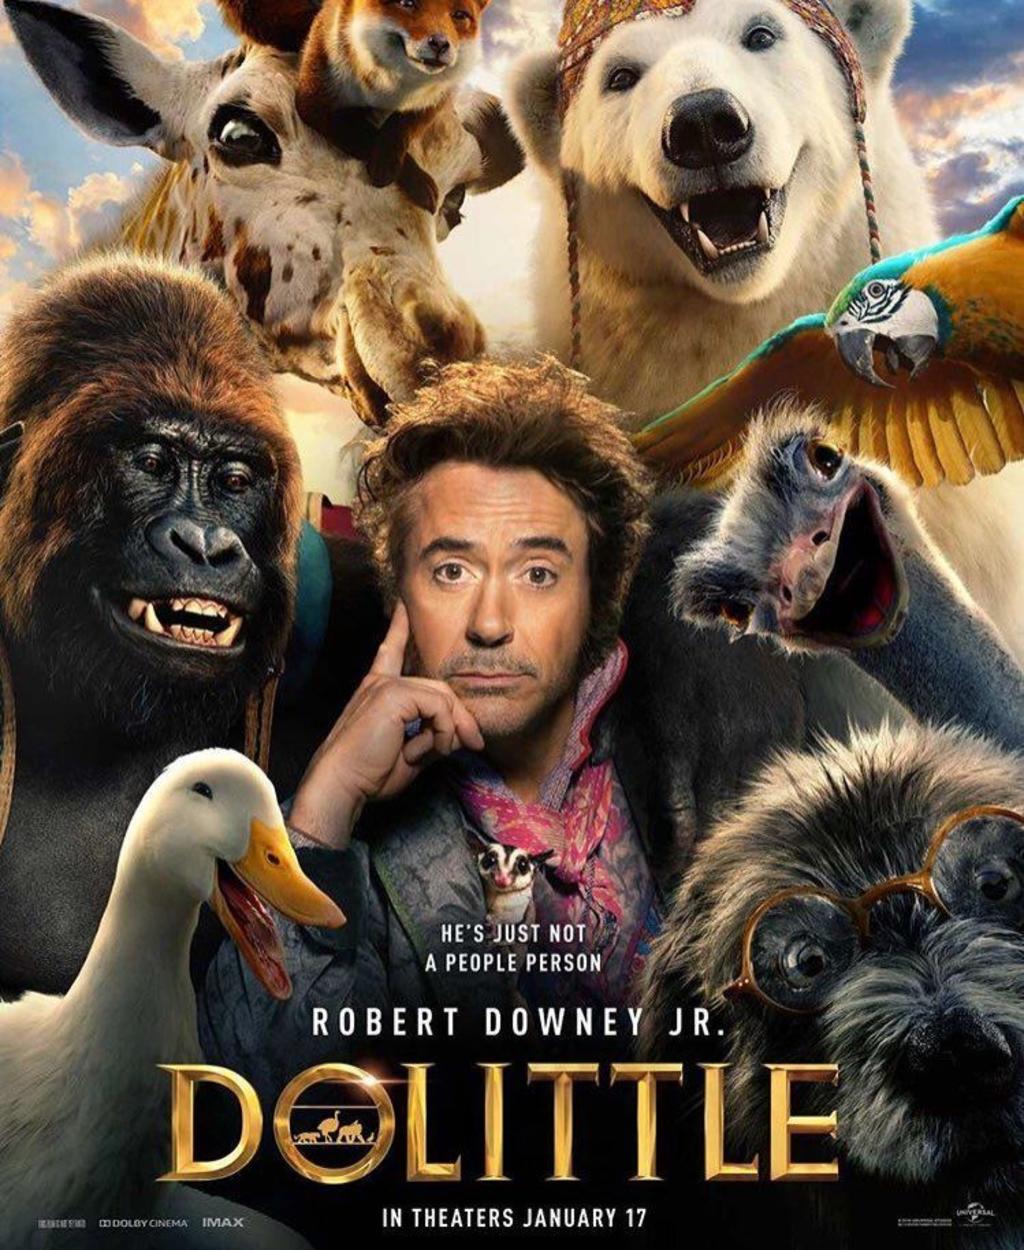 El primer adelanto de la película Dr. Dolittle, una nueva versión cinematográfica del cuento creado por el autor inglés Hugh Lofting, fue lanzado este domingo con el actor Robert Downey Jr. como protagonista. (ESPECIAL)